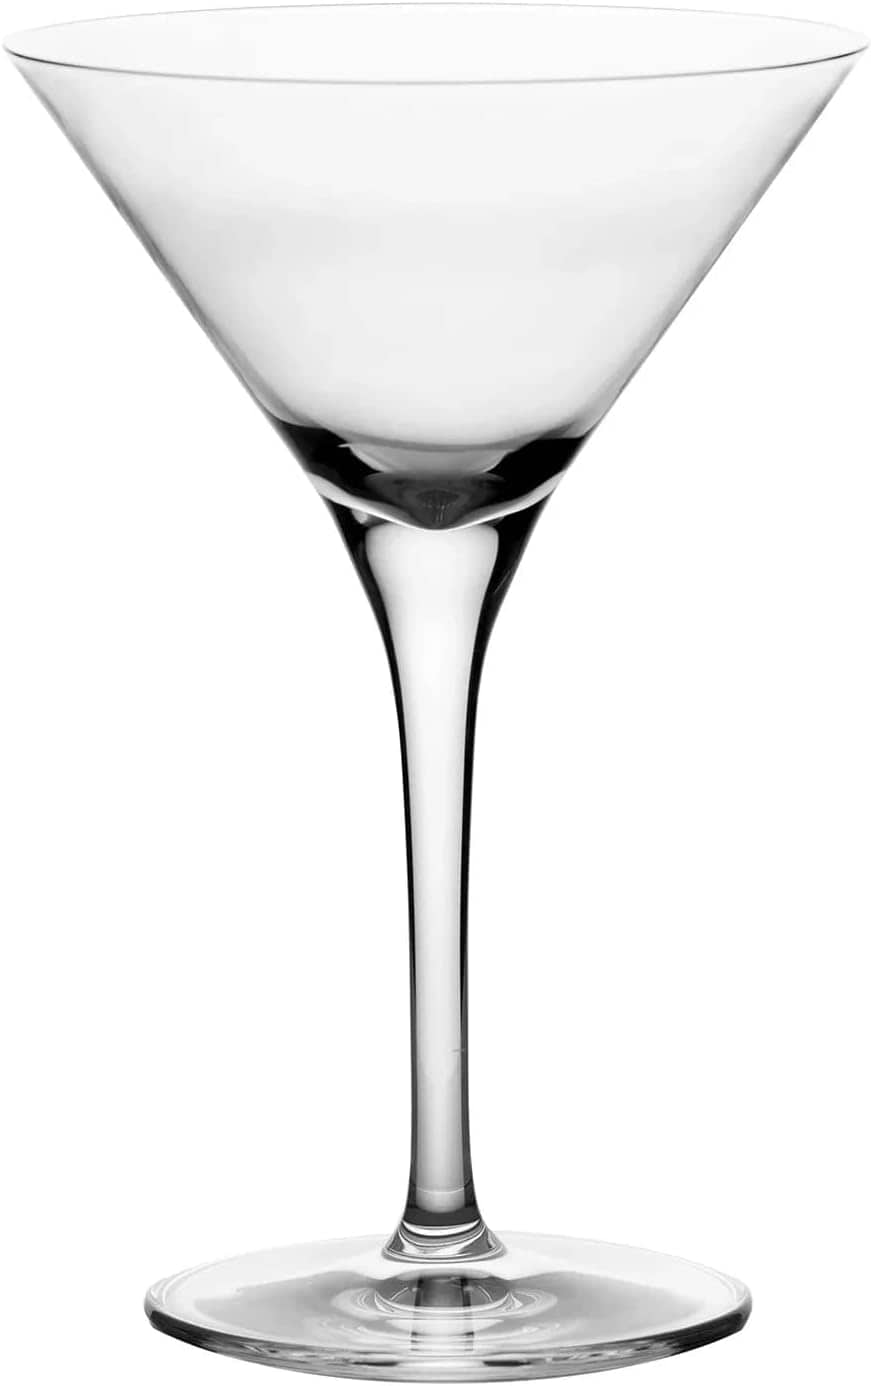  -  Ravenhead Mystique Martini Set Of 4  -  60001191